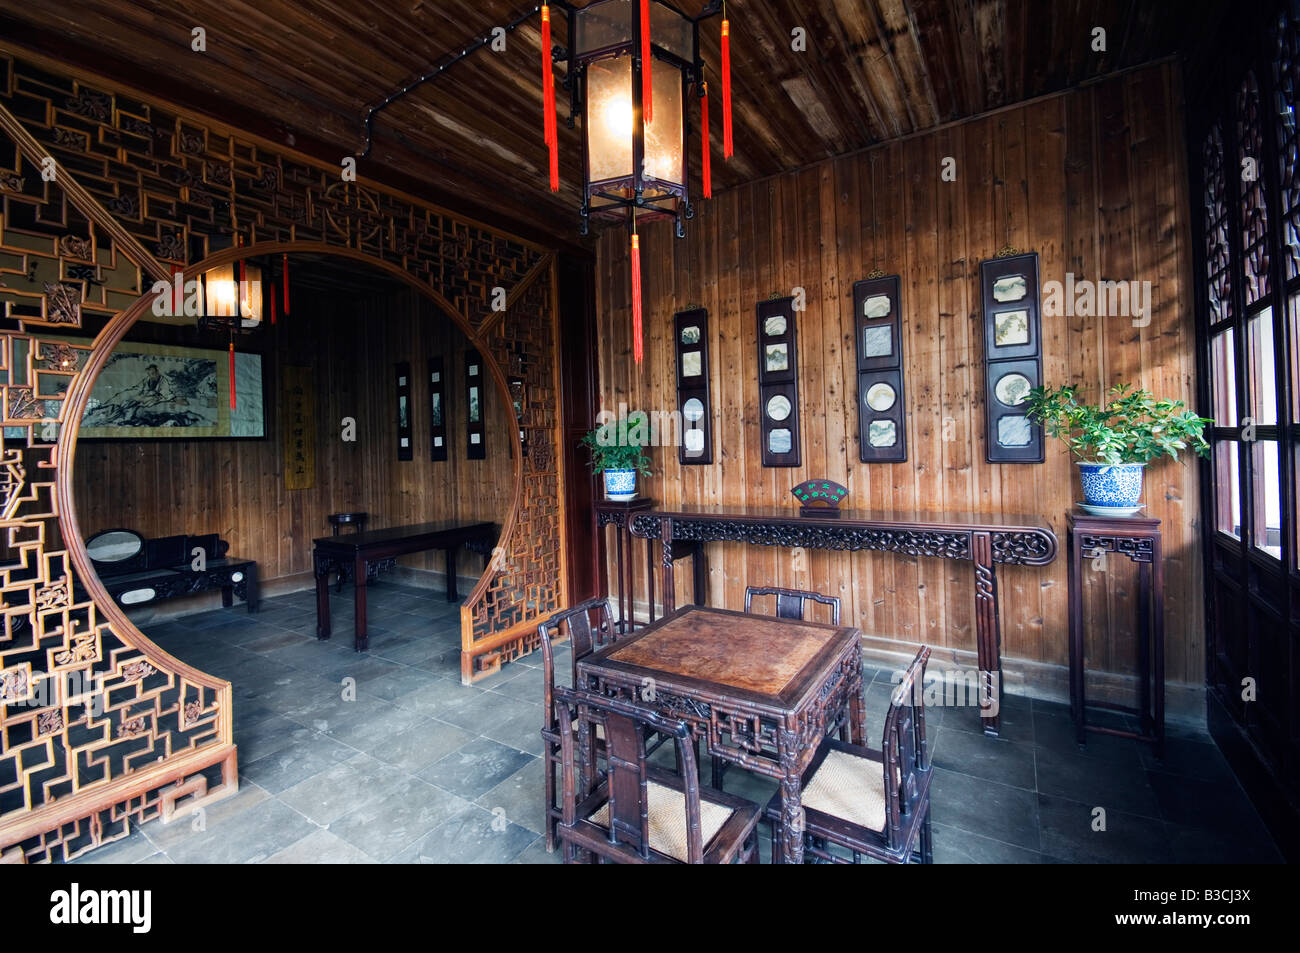 La Chine, la province de Jiangsu, Suzhou City. Les Couples Garden Retreat, décorées dans des meubles de la dynastie Qing, construit pendant le règne de l'empereur Guangxu (1875-1908) Patrimoine mondial classé par l'UNESCO en 2000. Banque D'Images